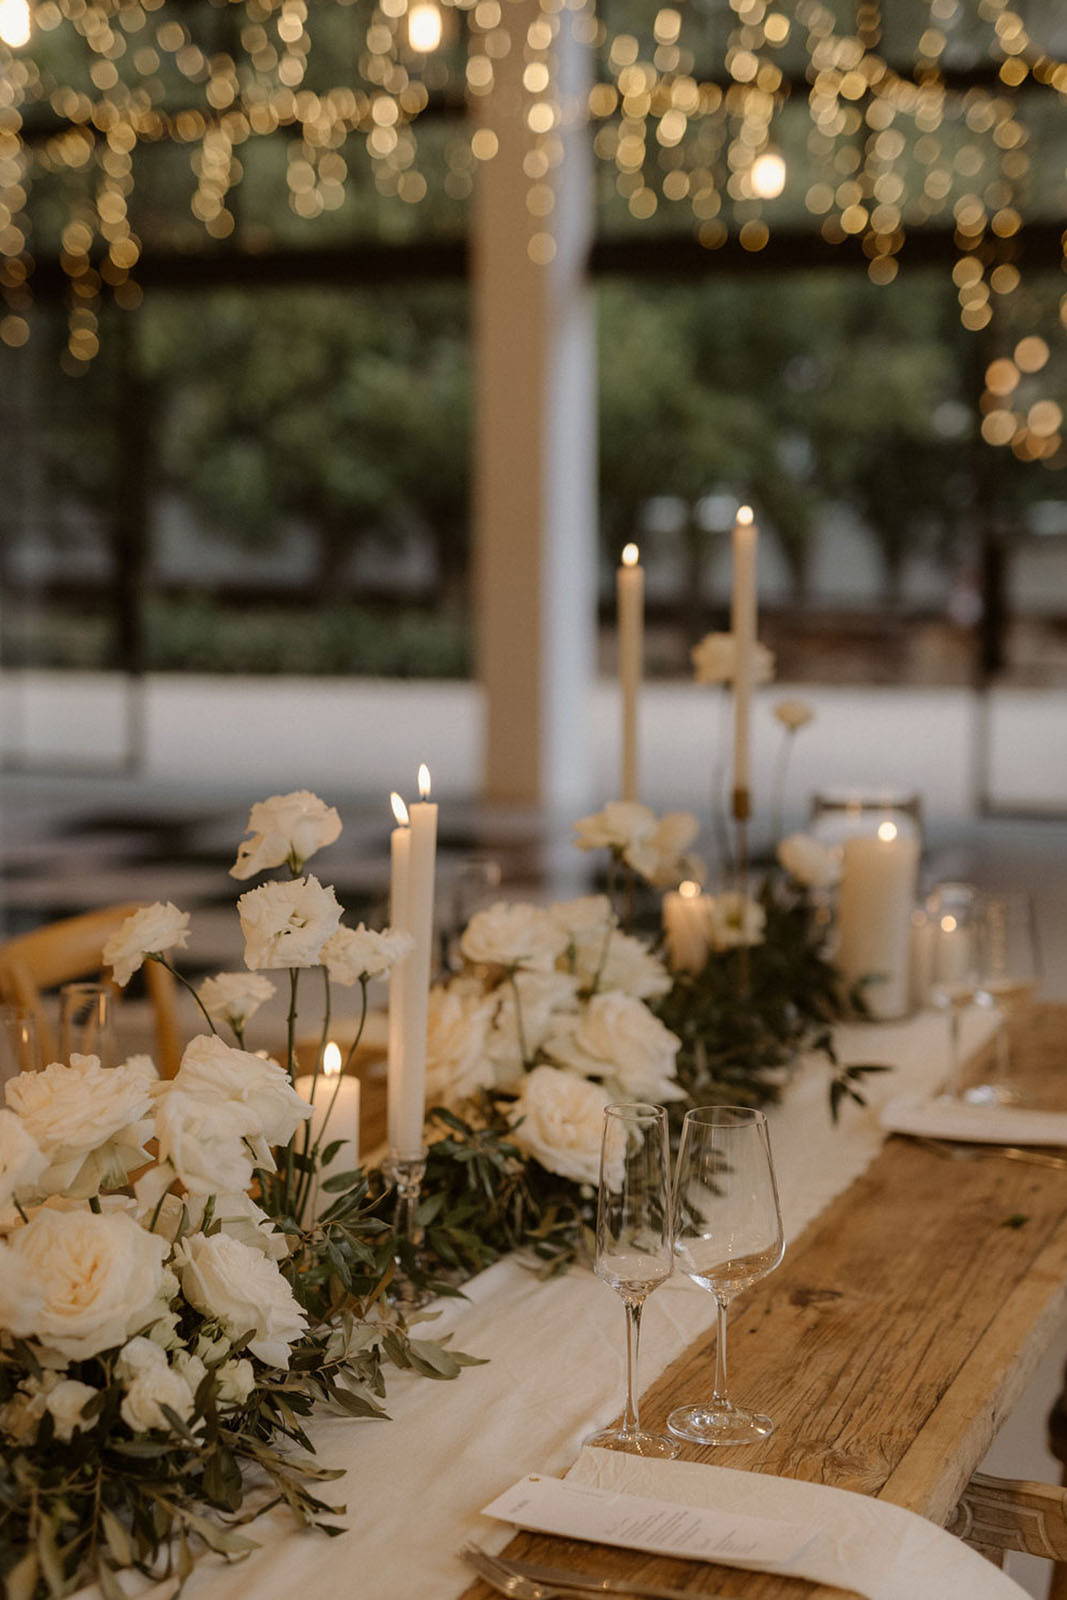 Wedding table with Christmas spirit